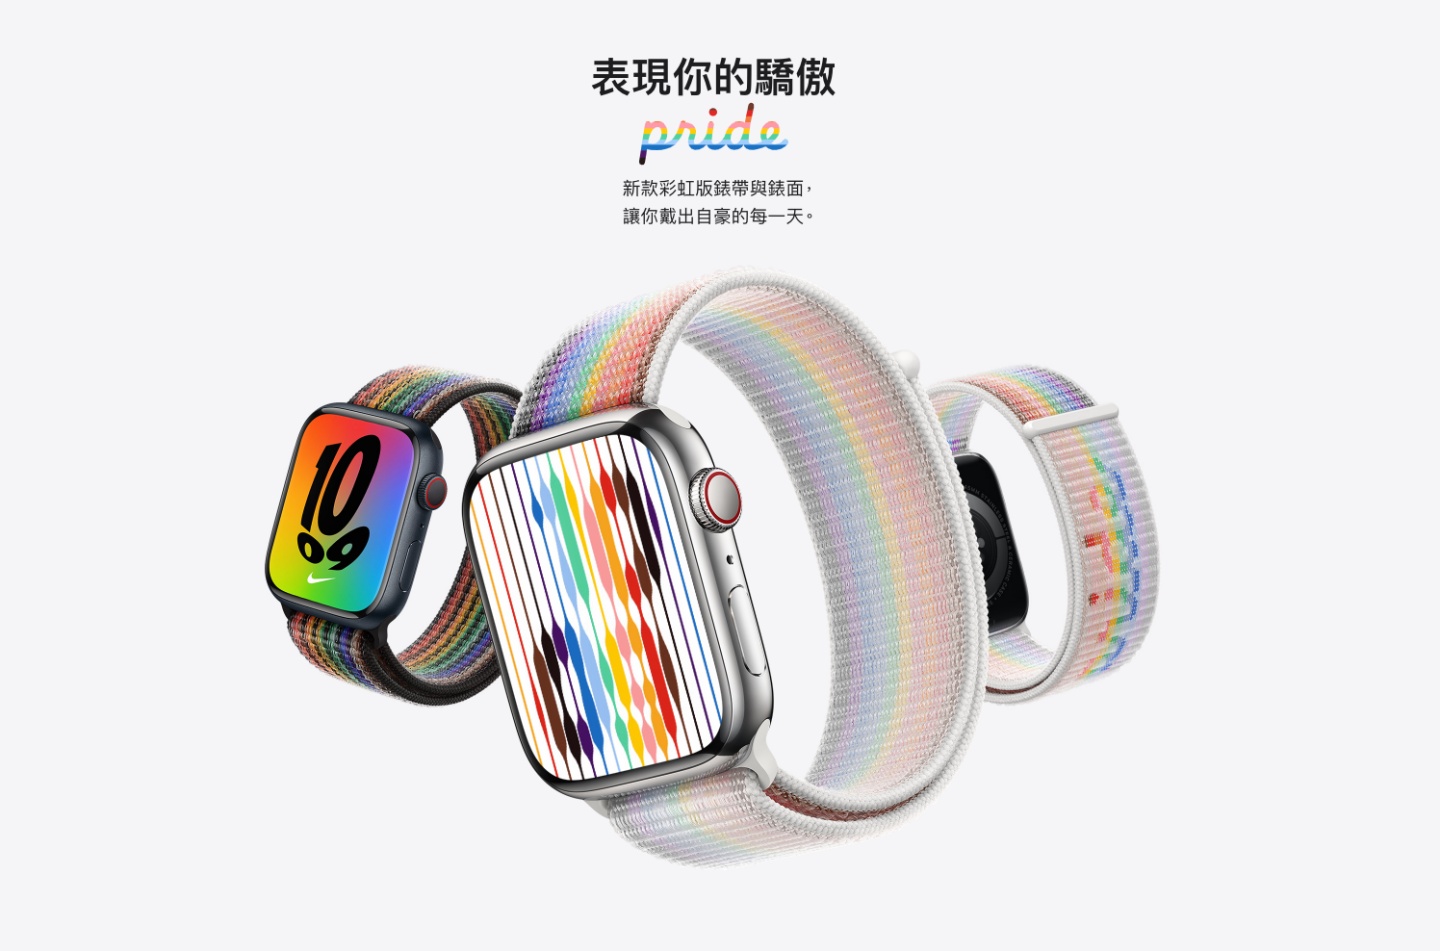 蘋果推出 Apple Watch 新款彩虹錶帶！漸層設計超吸睛 全新的彩虹線條錶面現在也能下載了